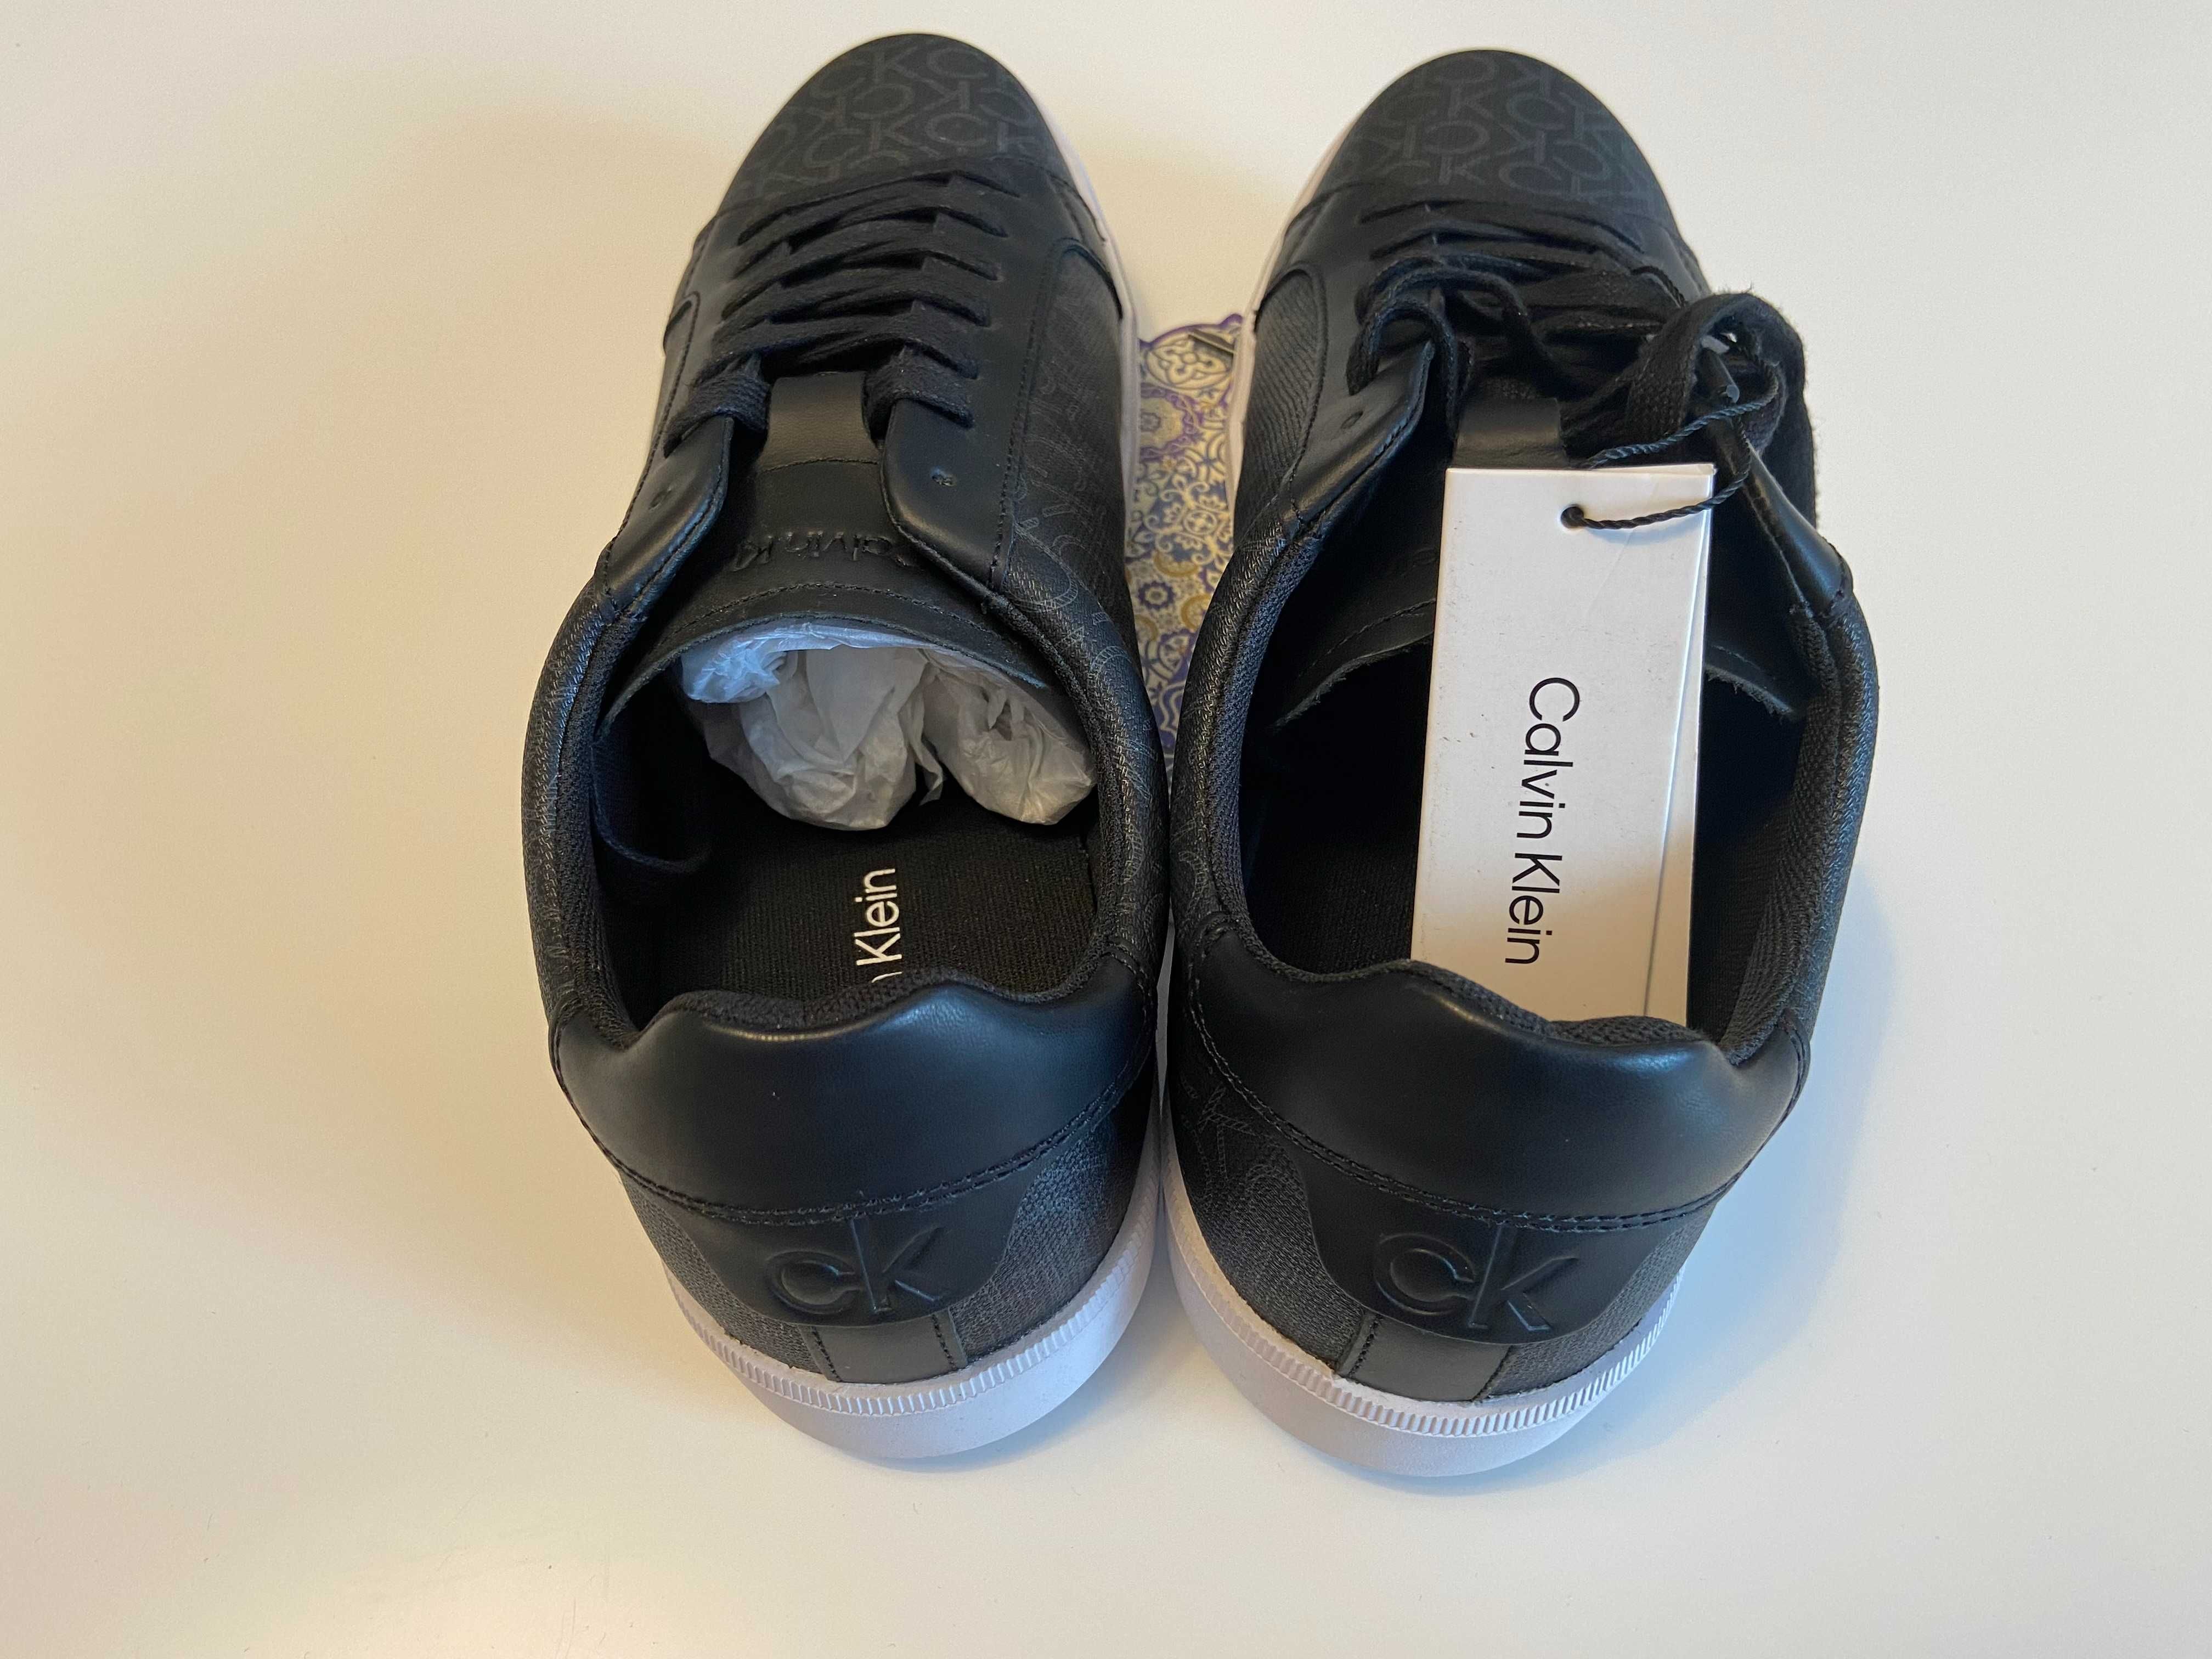 Sneakers Calvin Klein Low Top Lace Up Cv Mono Black HM0HM00262 size 43